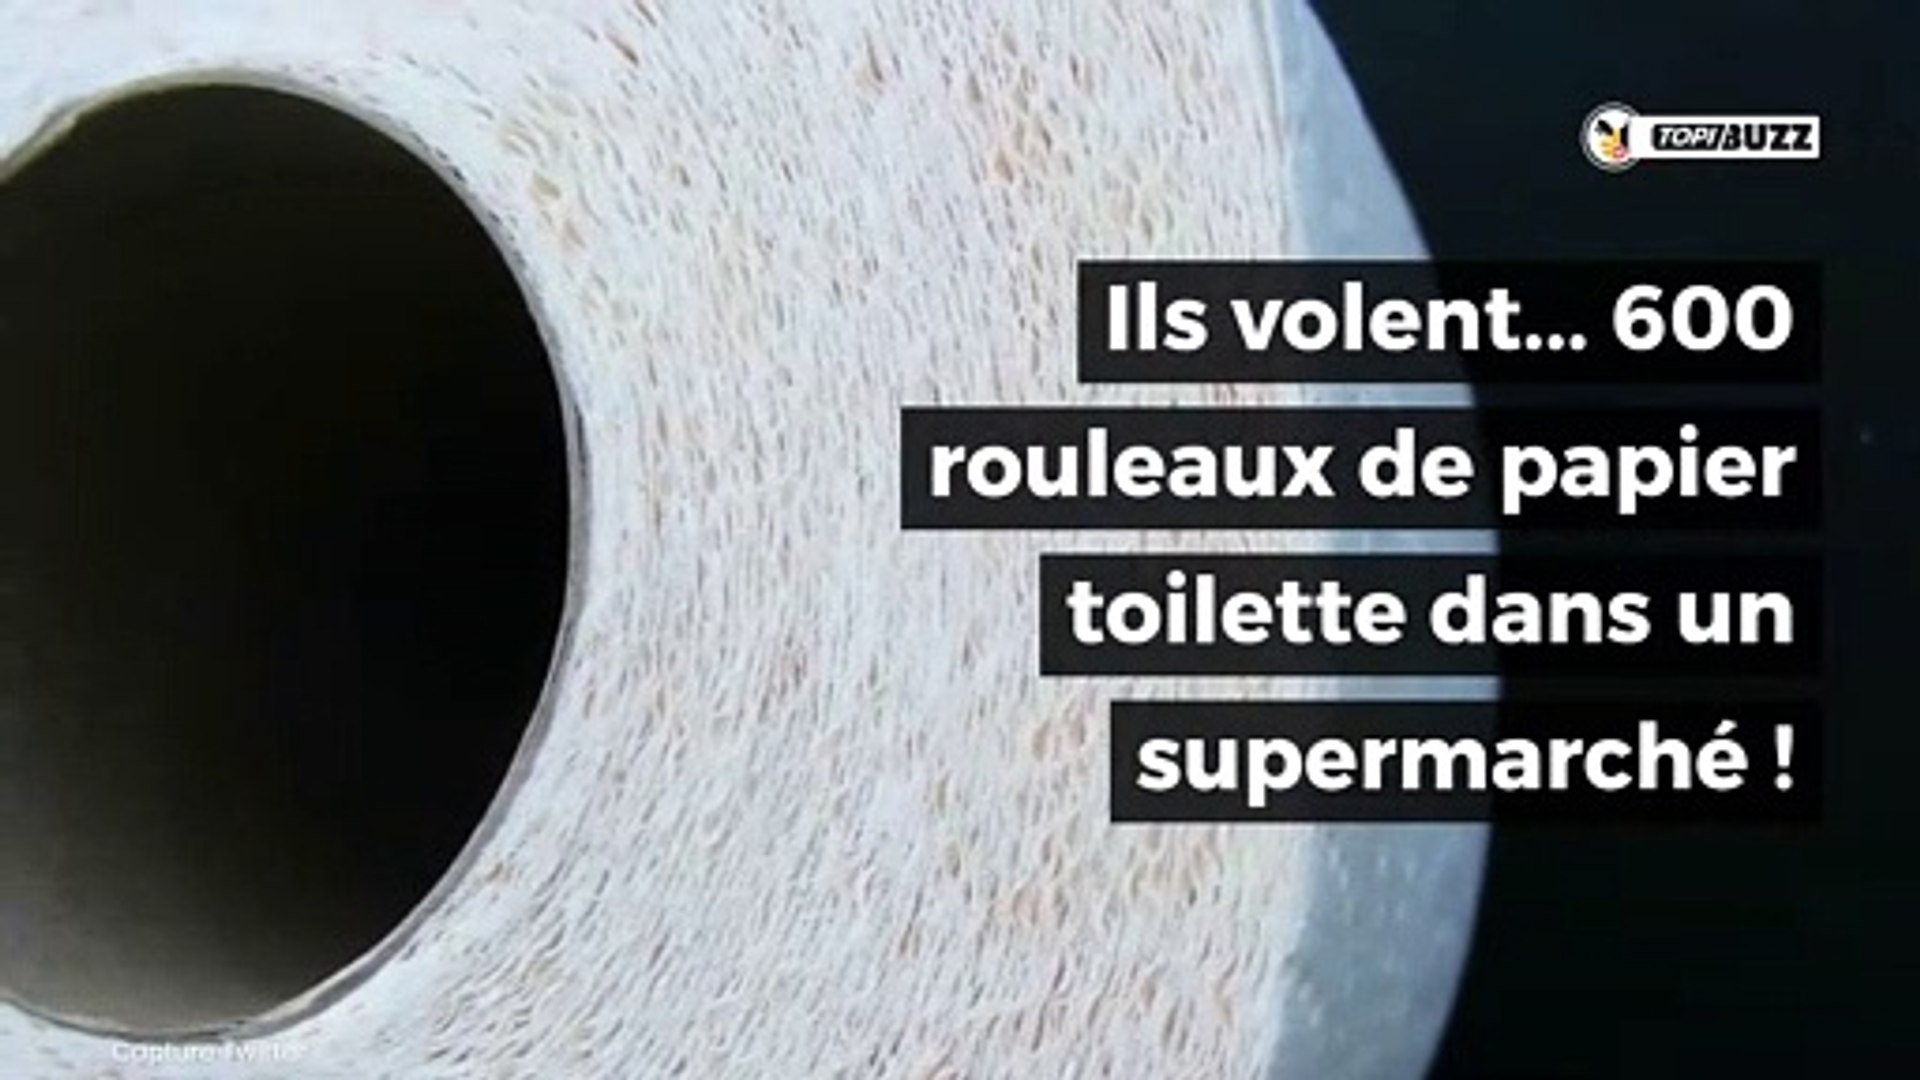 Ils volent 600 rouleaux de papier toilette en pleine hystérie autour du  coronavirus - Vidéo Dailymotion